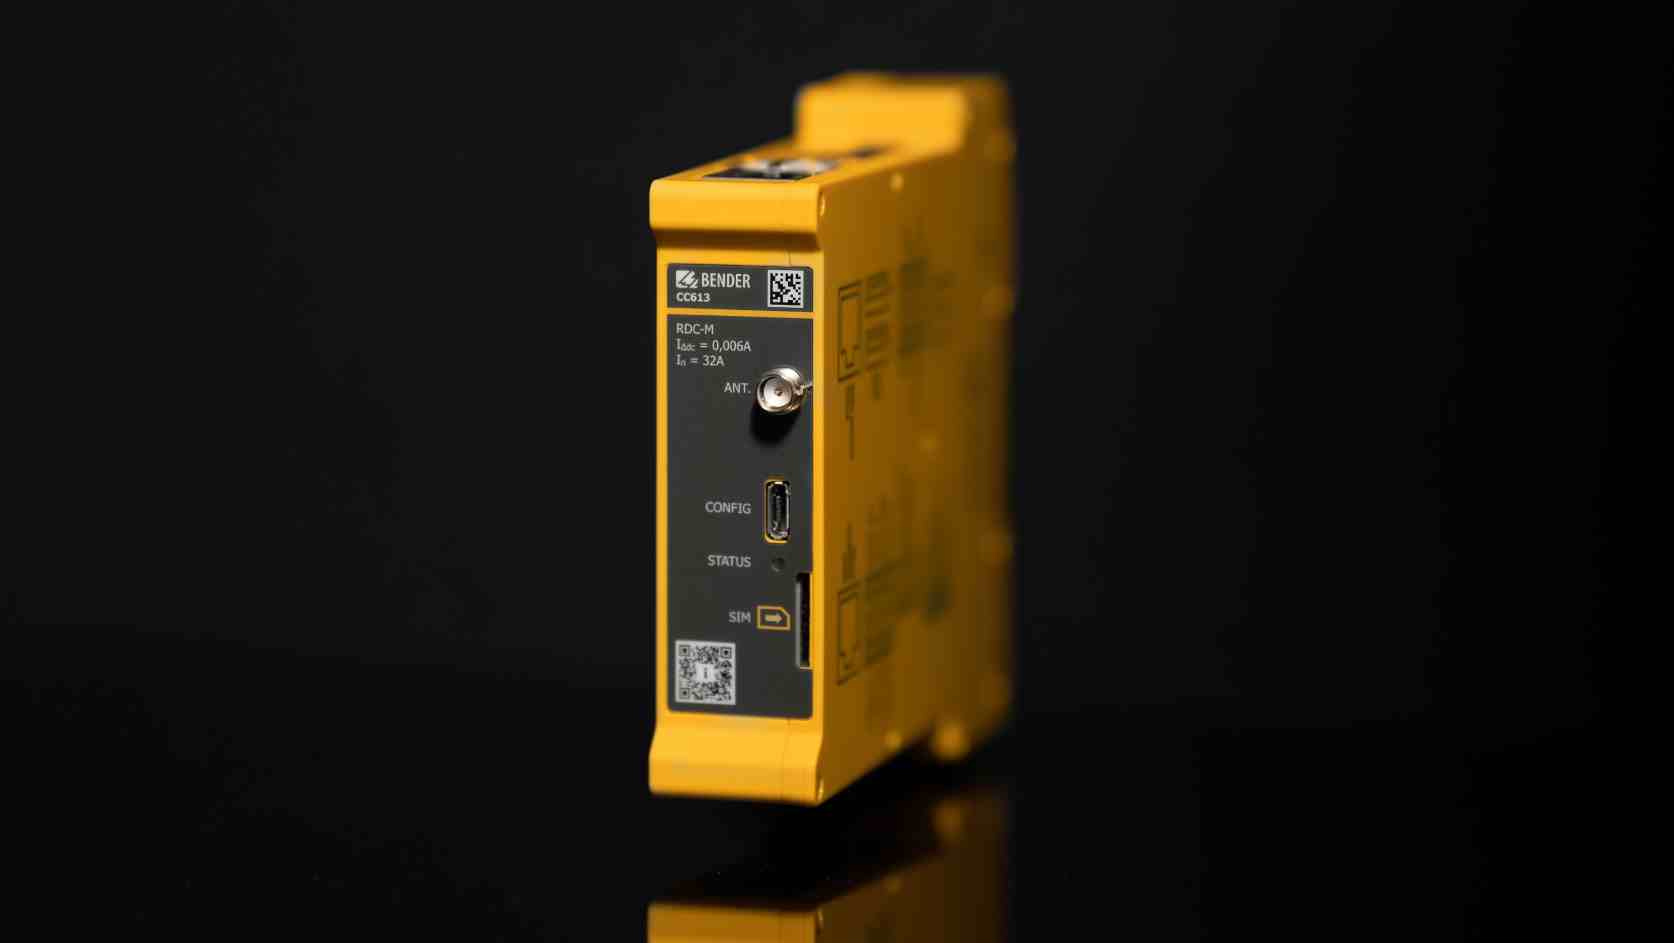 Ein gelber Ladecontroller CC613